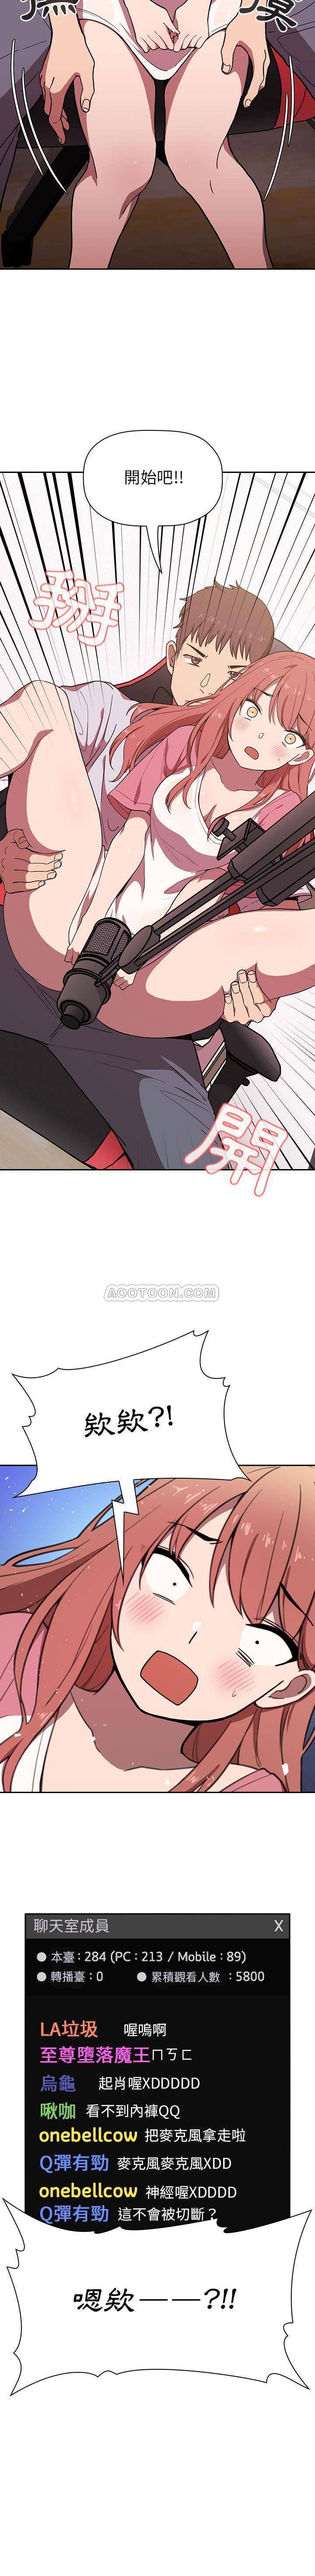 韩国污漫画 BJ的夢幻直播 第2话 30